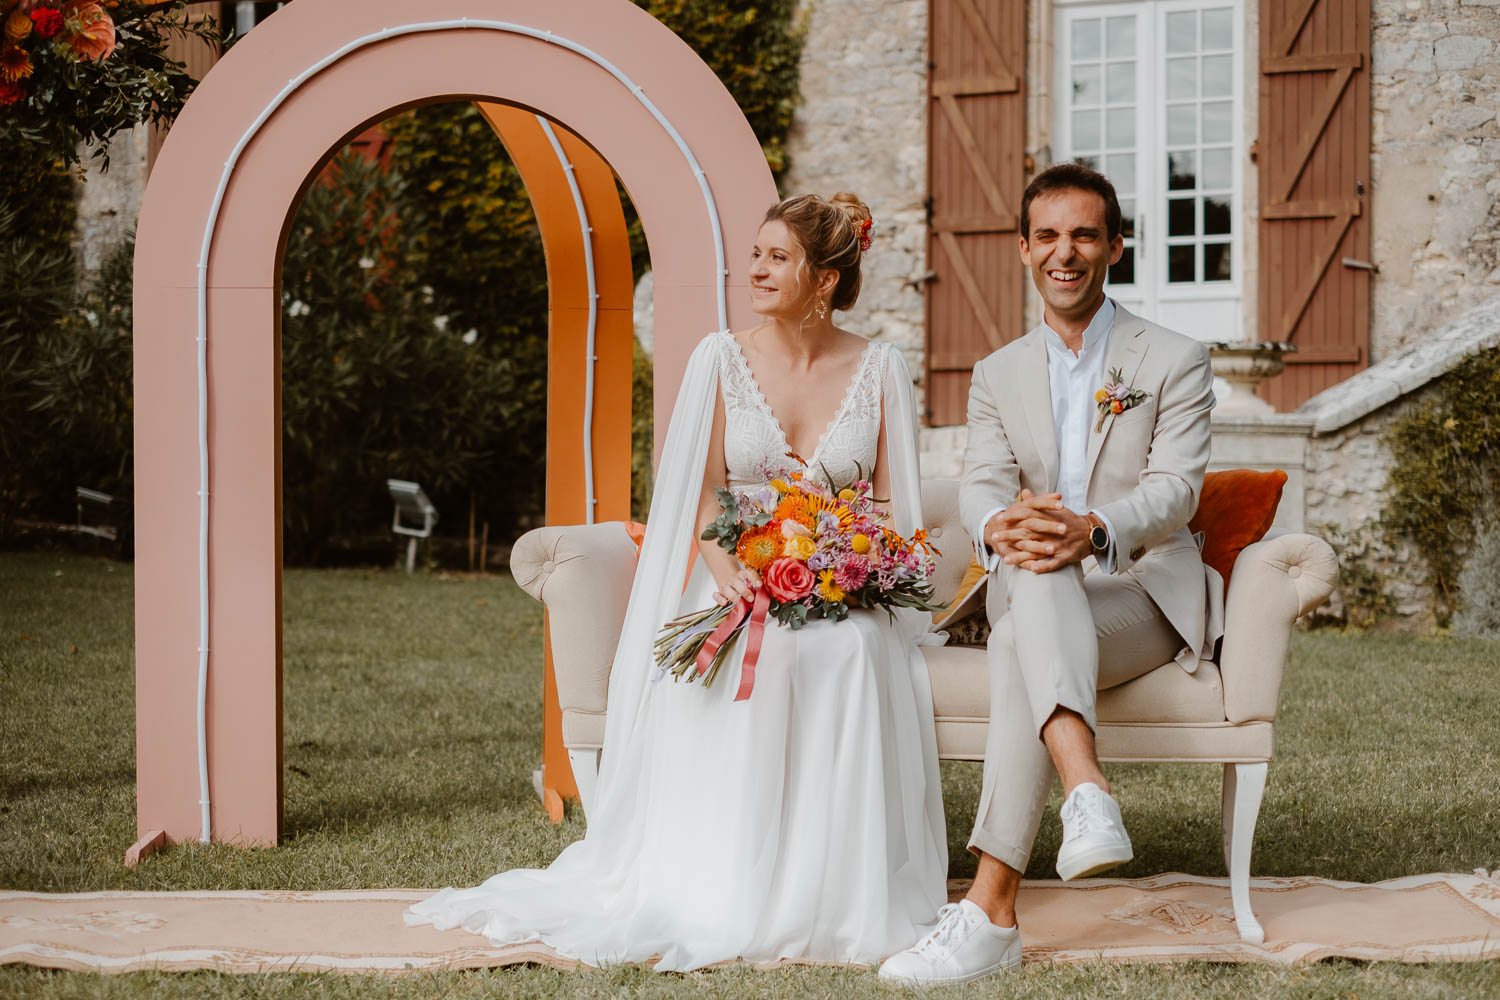 Reportage photo lifestyle de la cérémonie laïque d’un mariage au Château de Théon en Charente Maritime